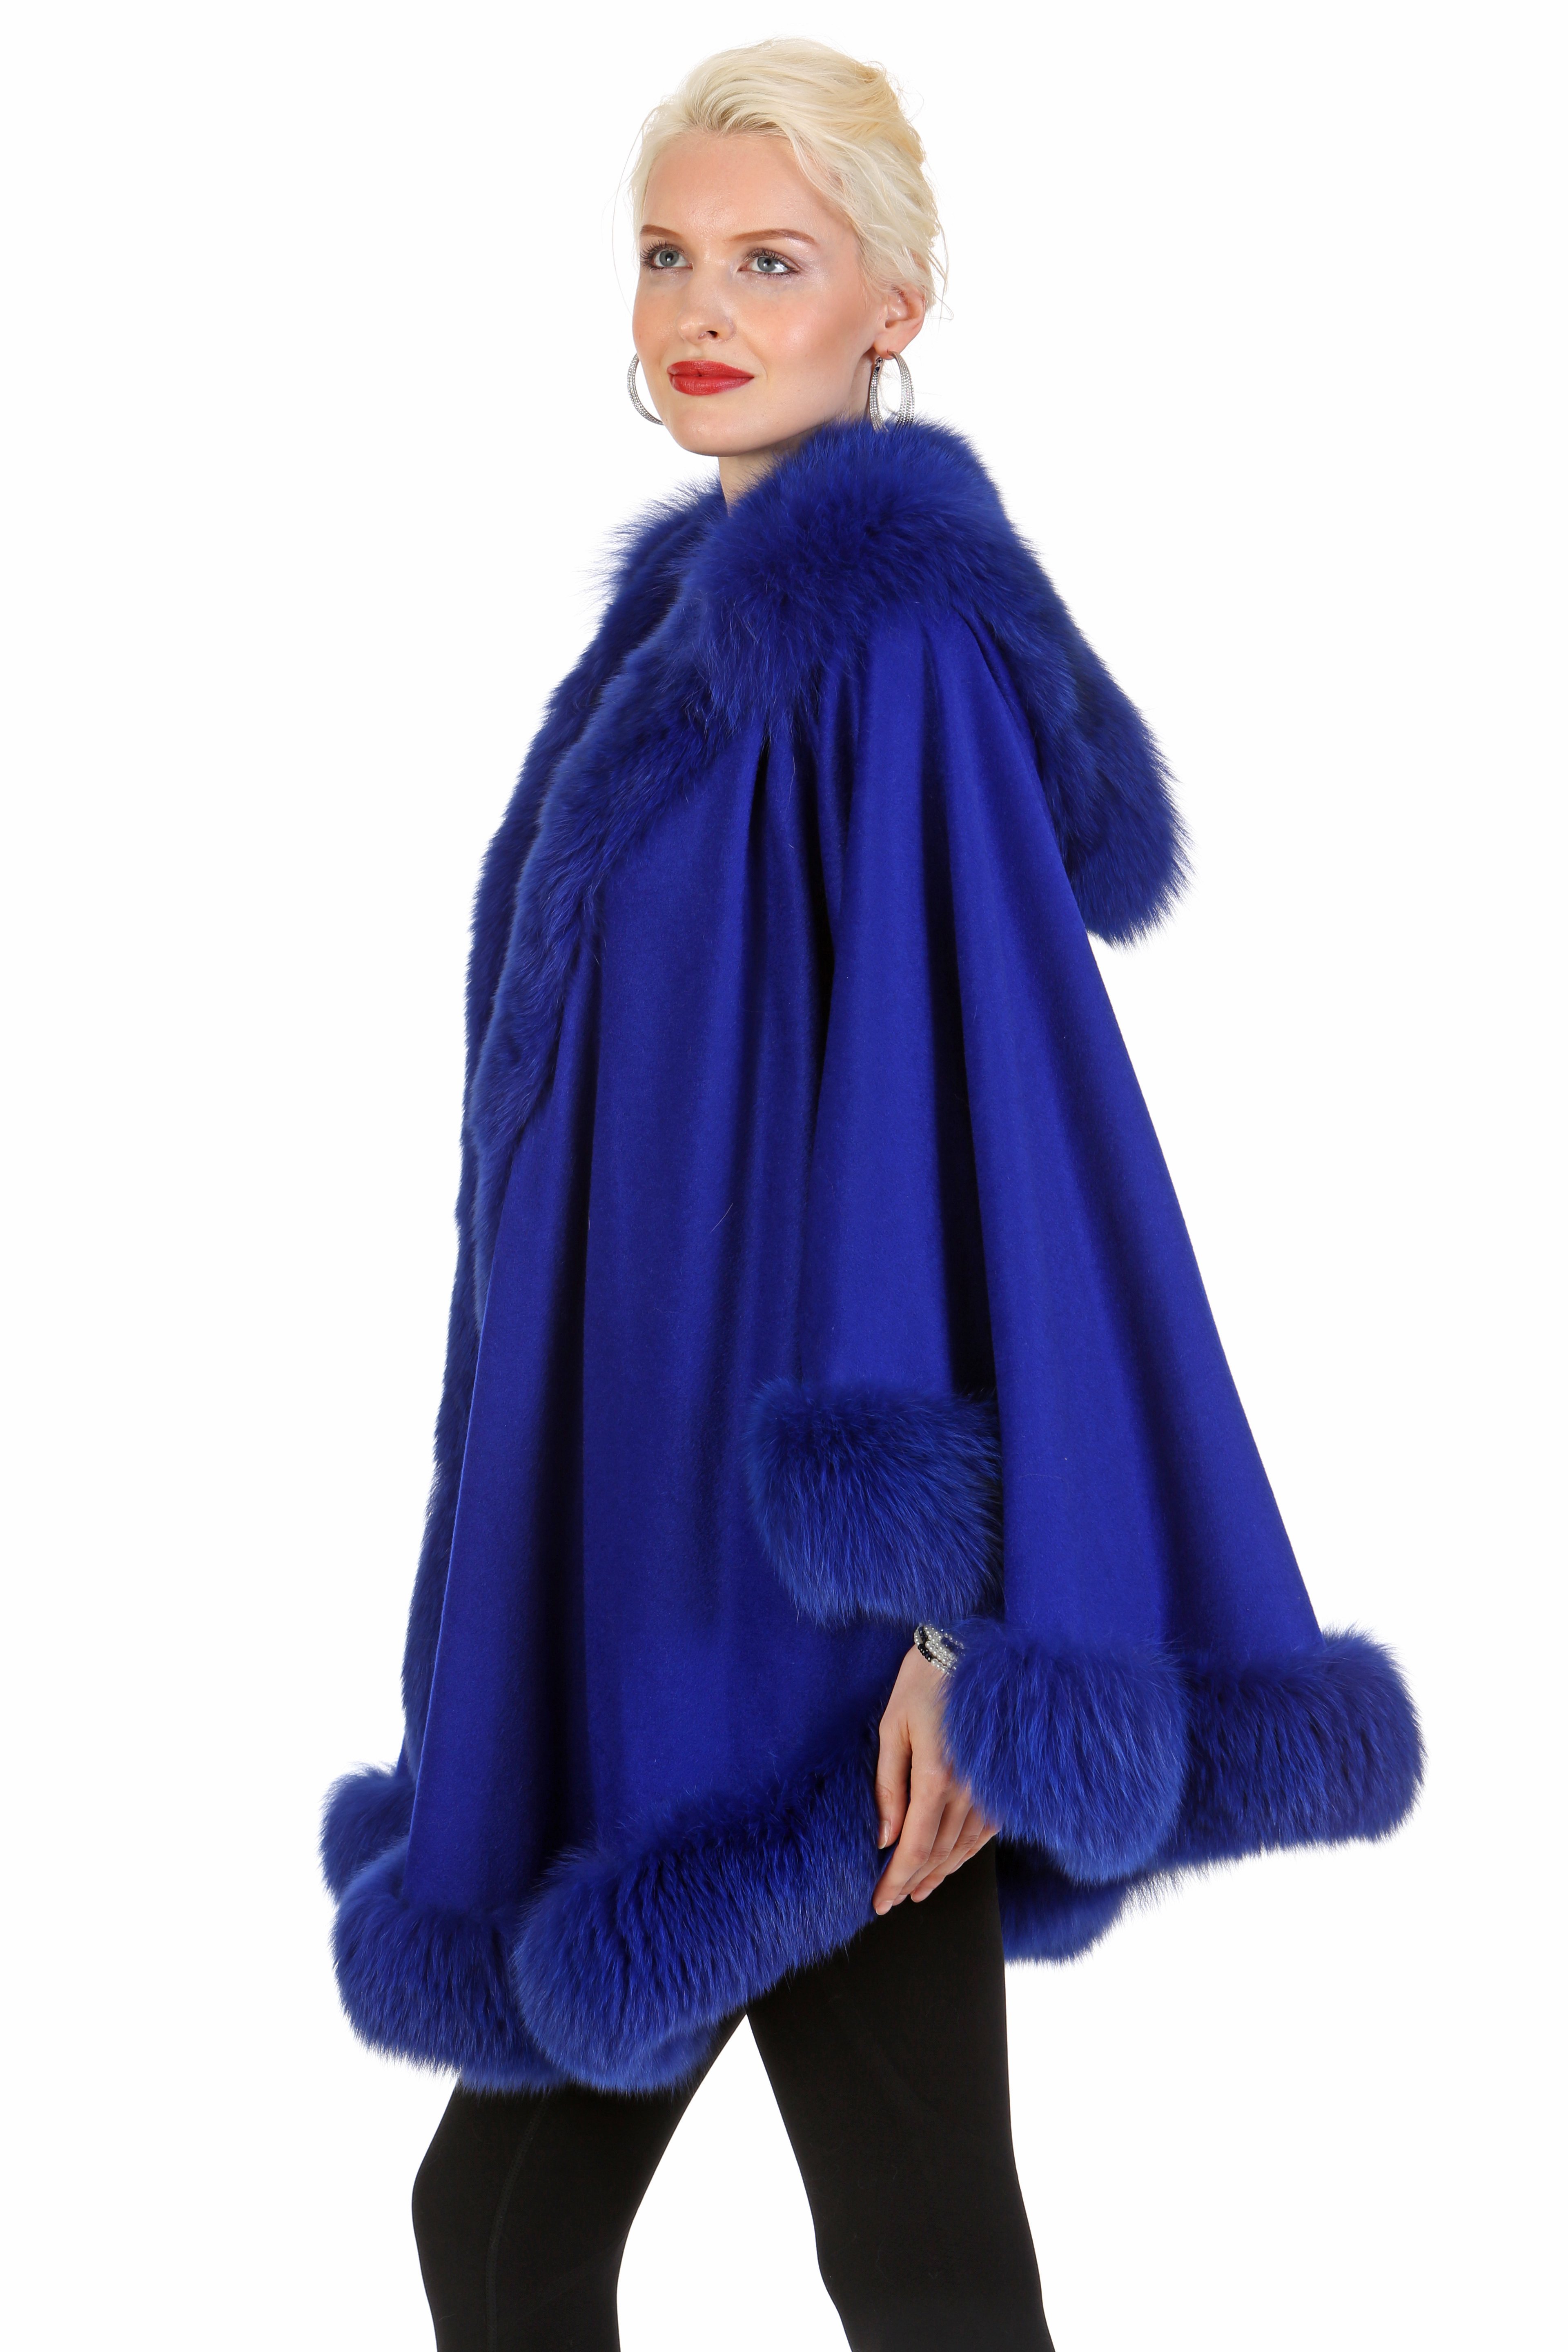 Royal Blue Cashmere Coat- Royal Blue Fox Trim